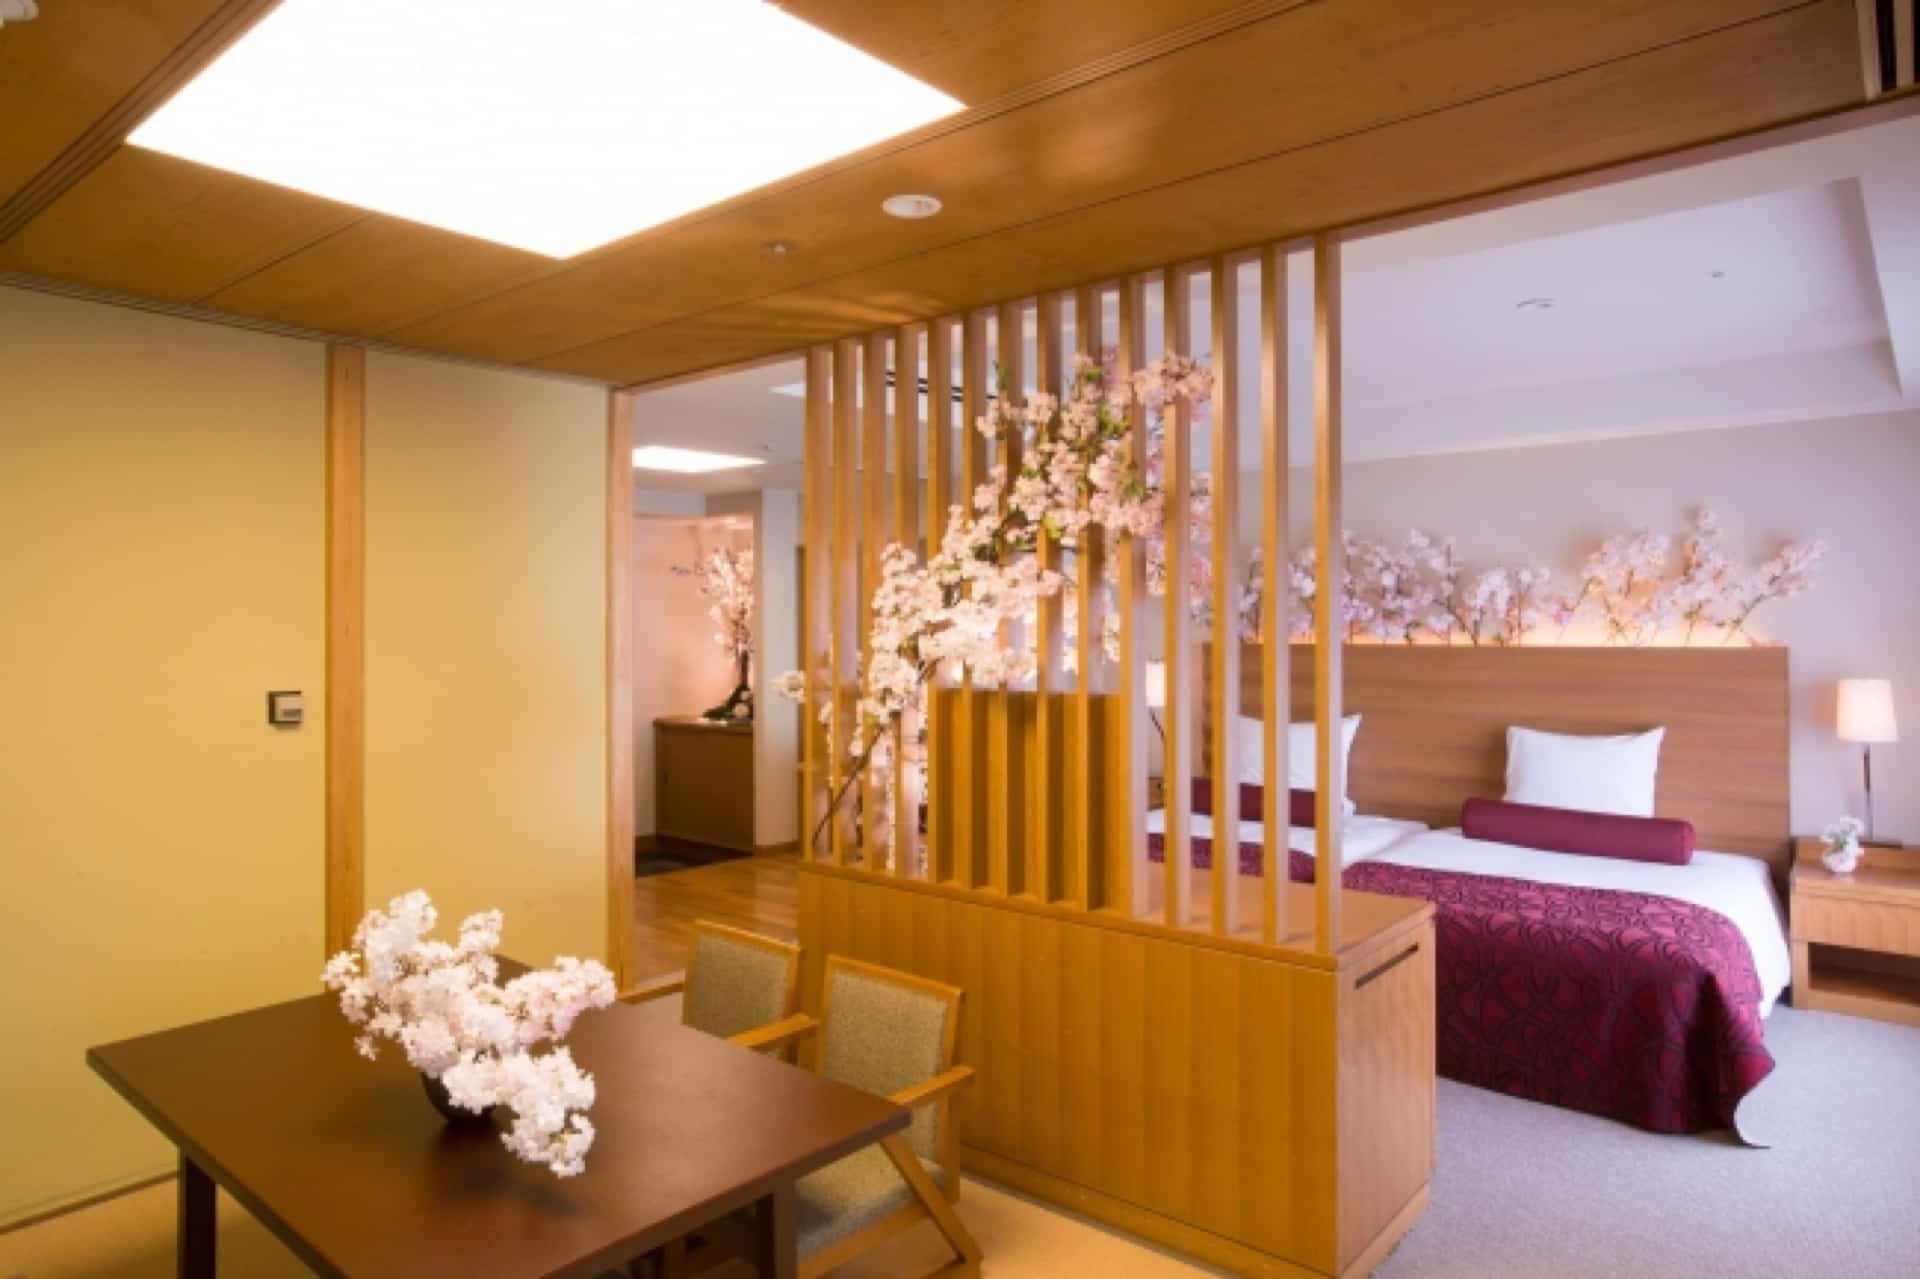 桜がいっぱいのお部屋…♡ホテルオークラ神戸で”お部屋でお花見”が叶うプランが1日1室限定で登場